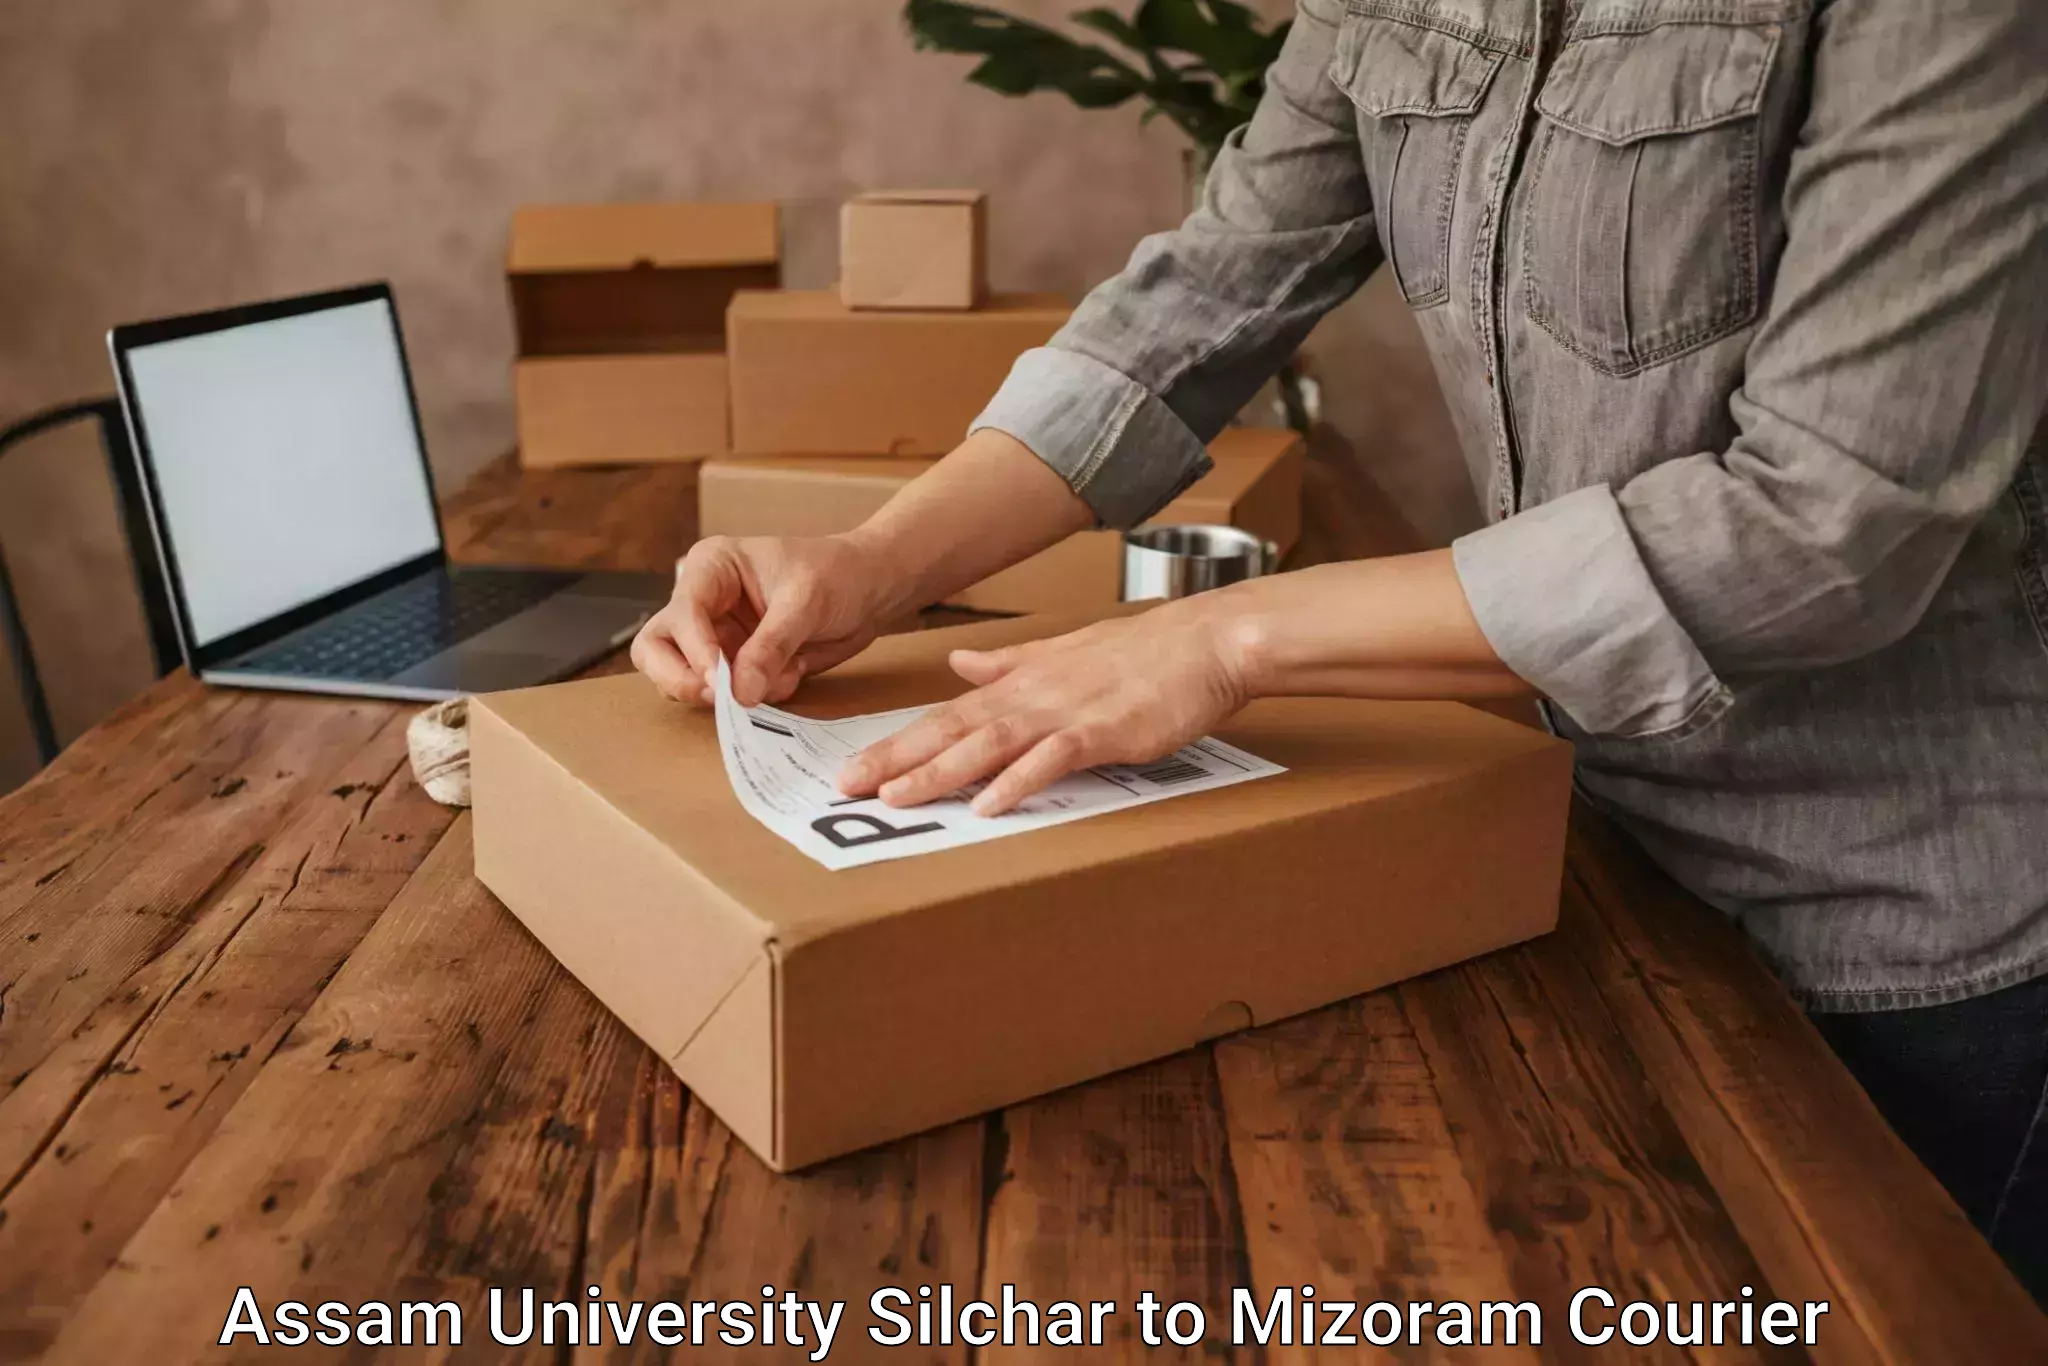 Courier app Assam University Silchar to Lawngtlai